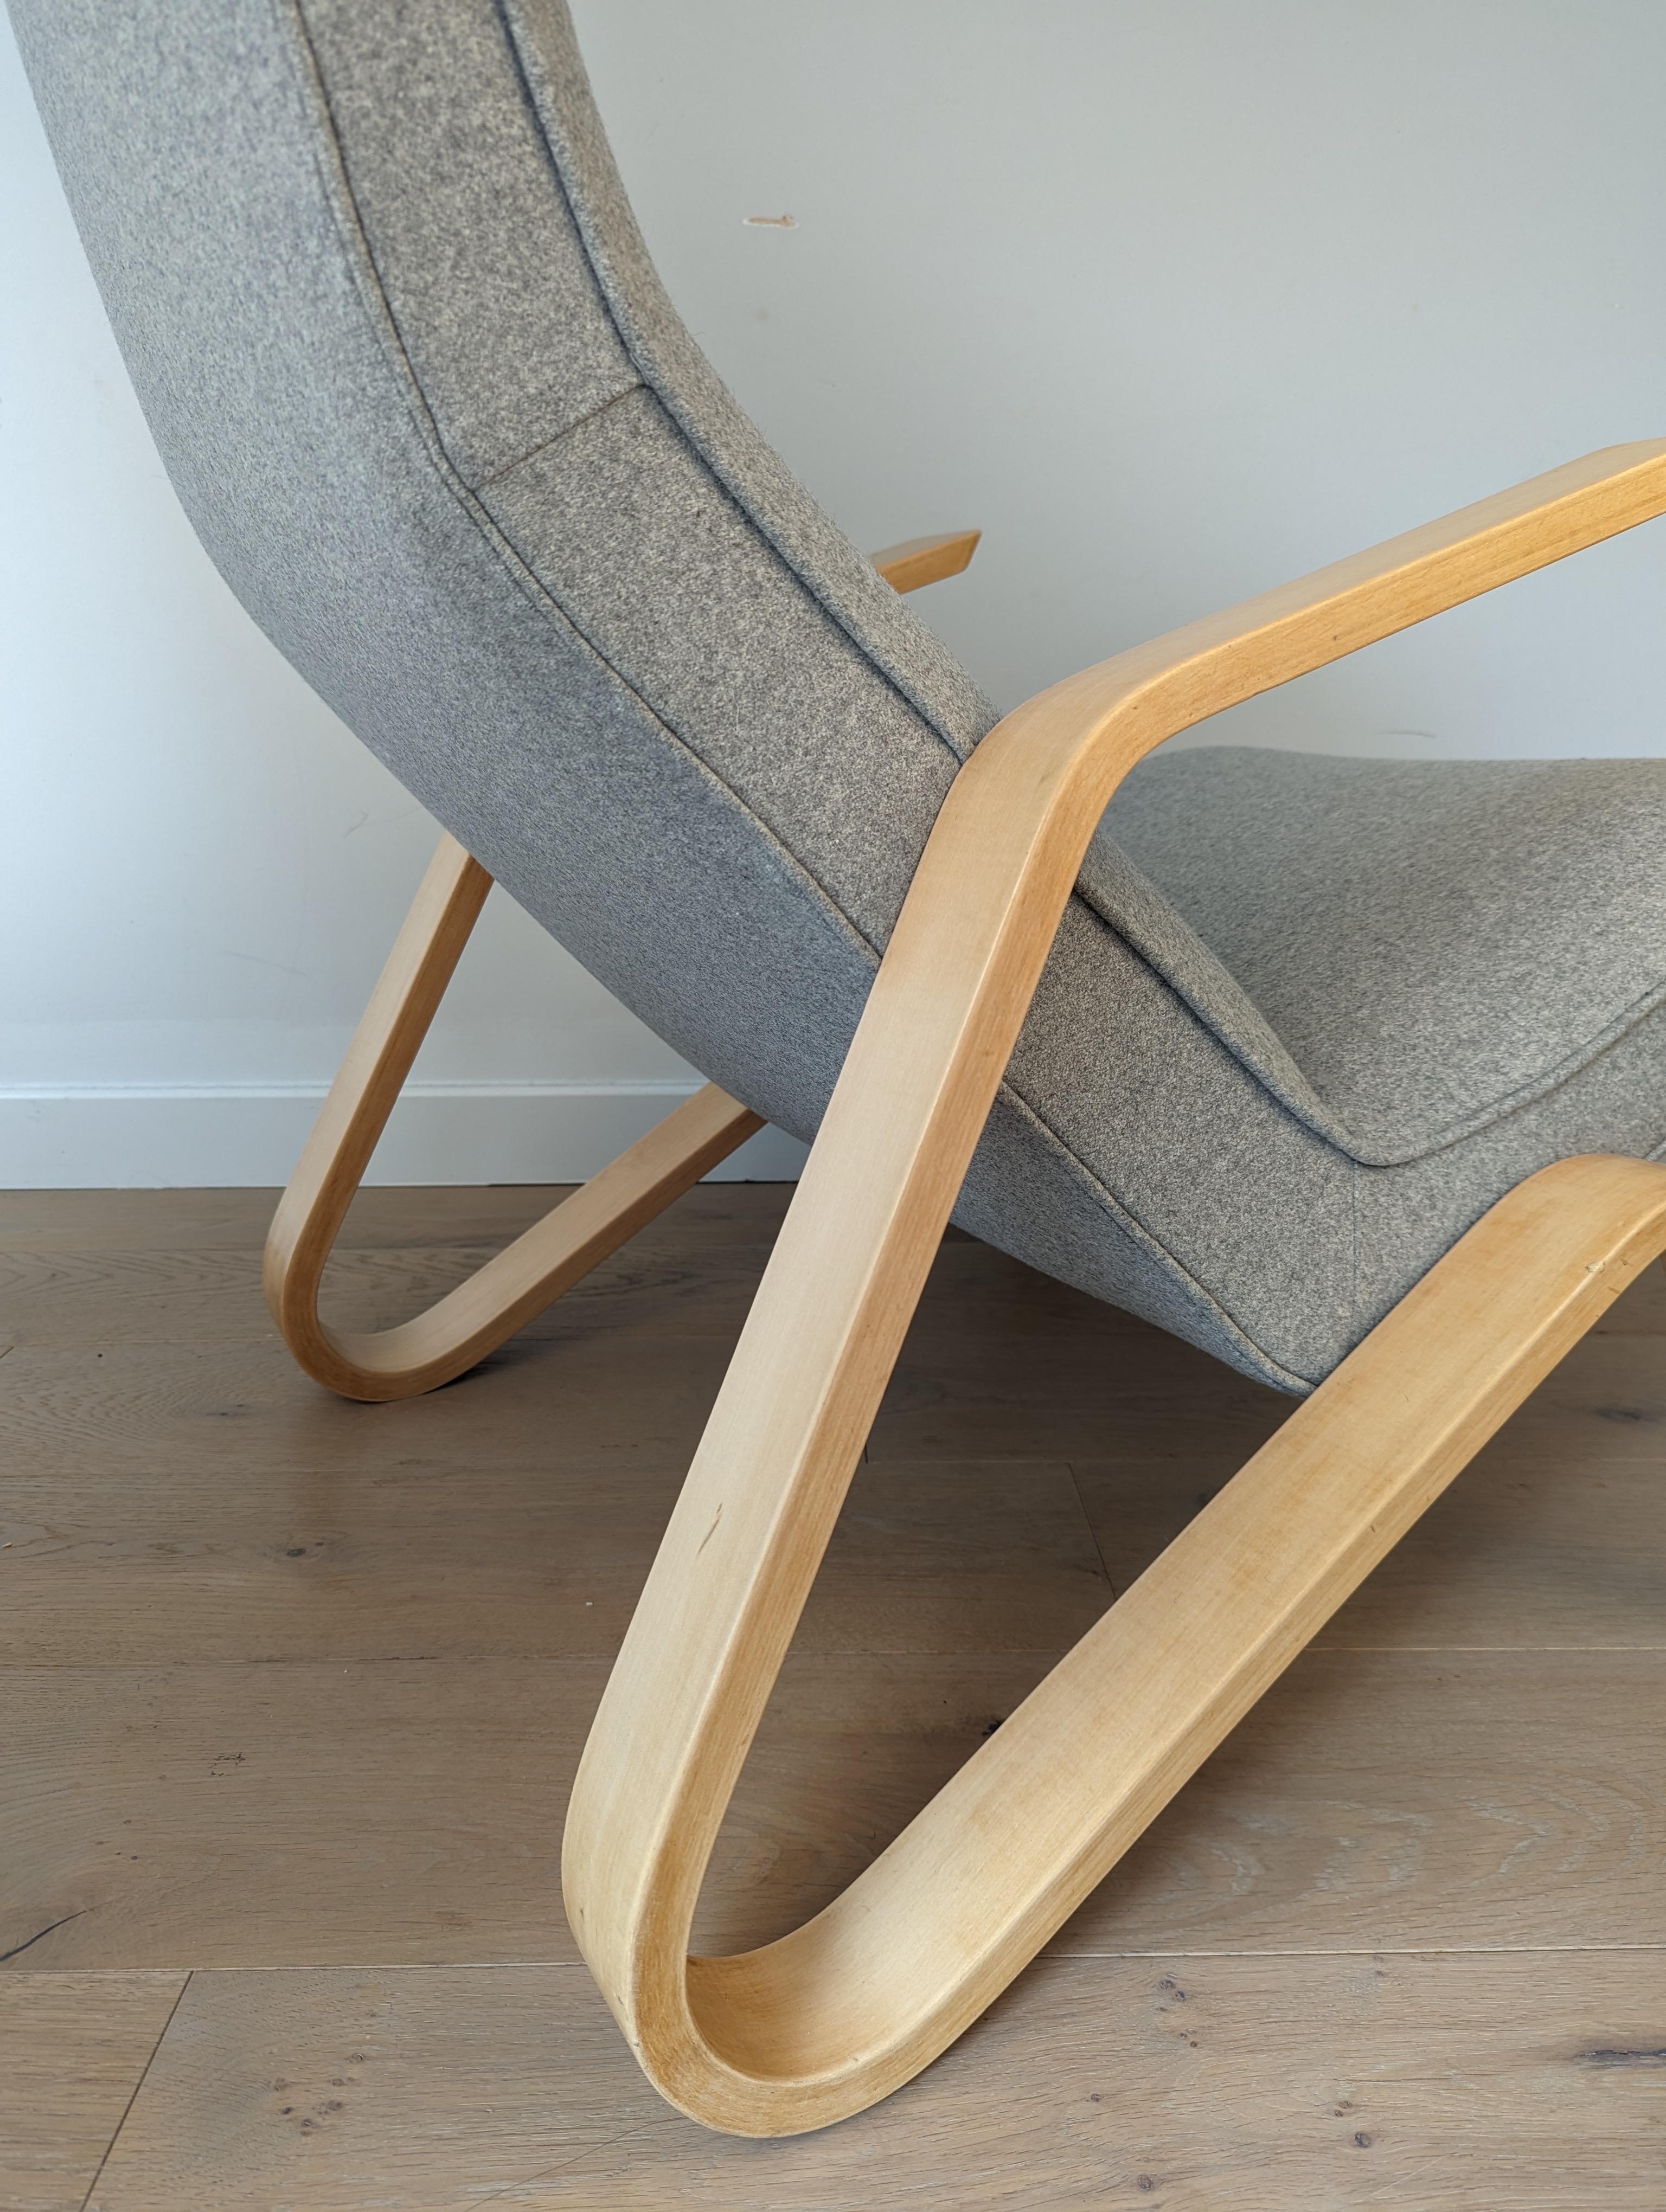 La chaise Grasshopper (ou modèle 61) a été conçue par Eero Saarinen pour Knoll en 1946. Il s'agit en fait de la première chaise conçue pour la société Knoll, et elle est aujourd'hui une icône du design, puisqu'elle figure dans les expositions des